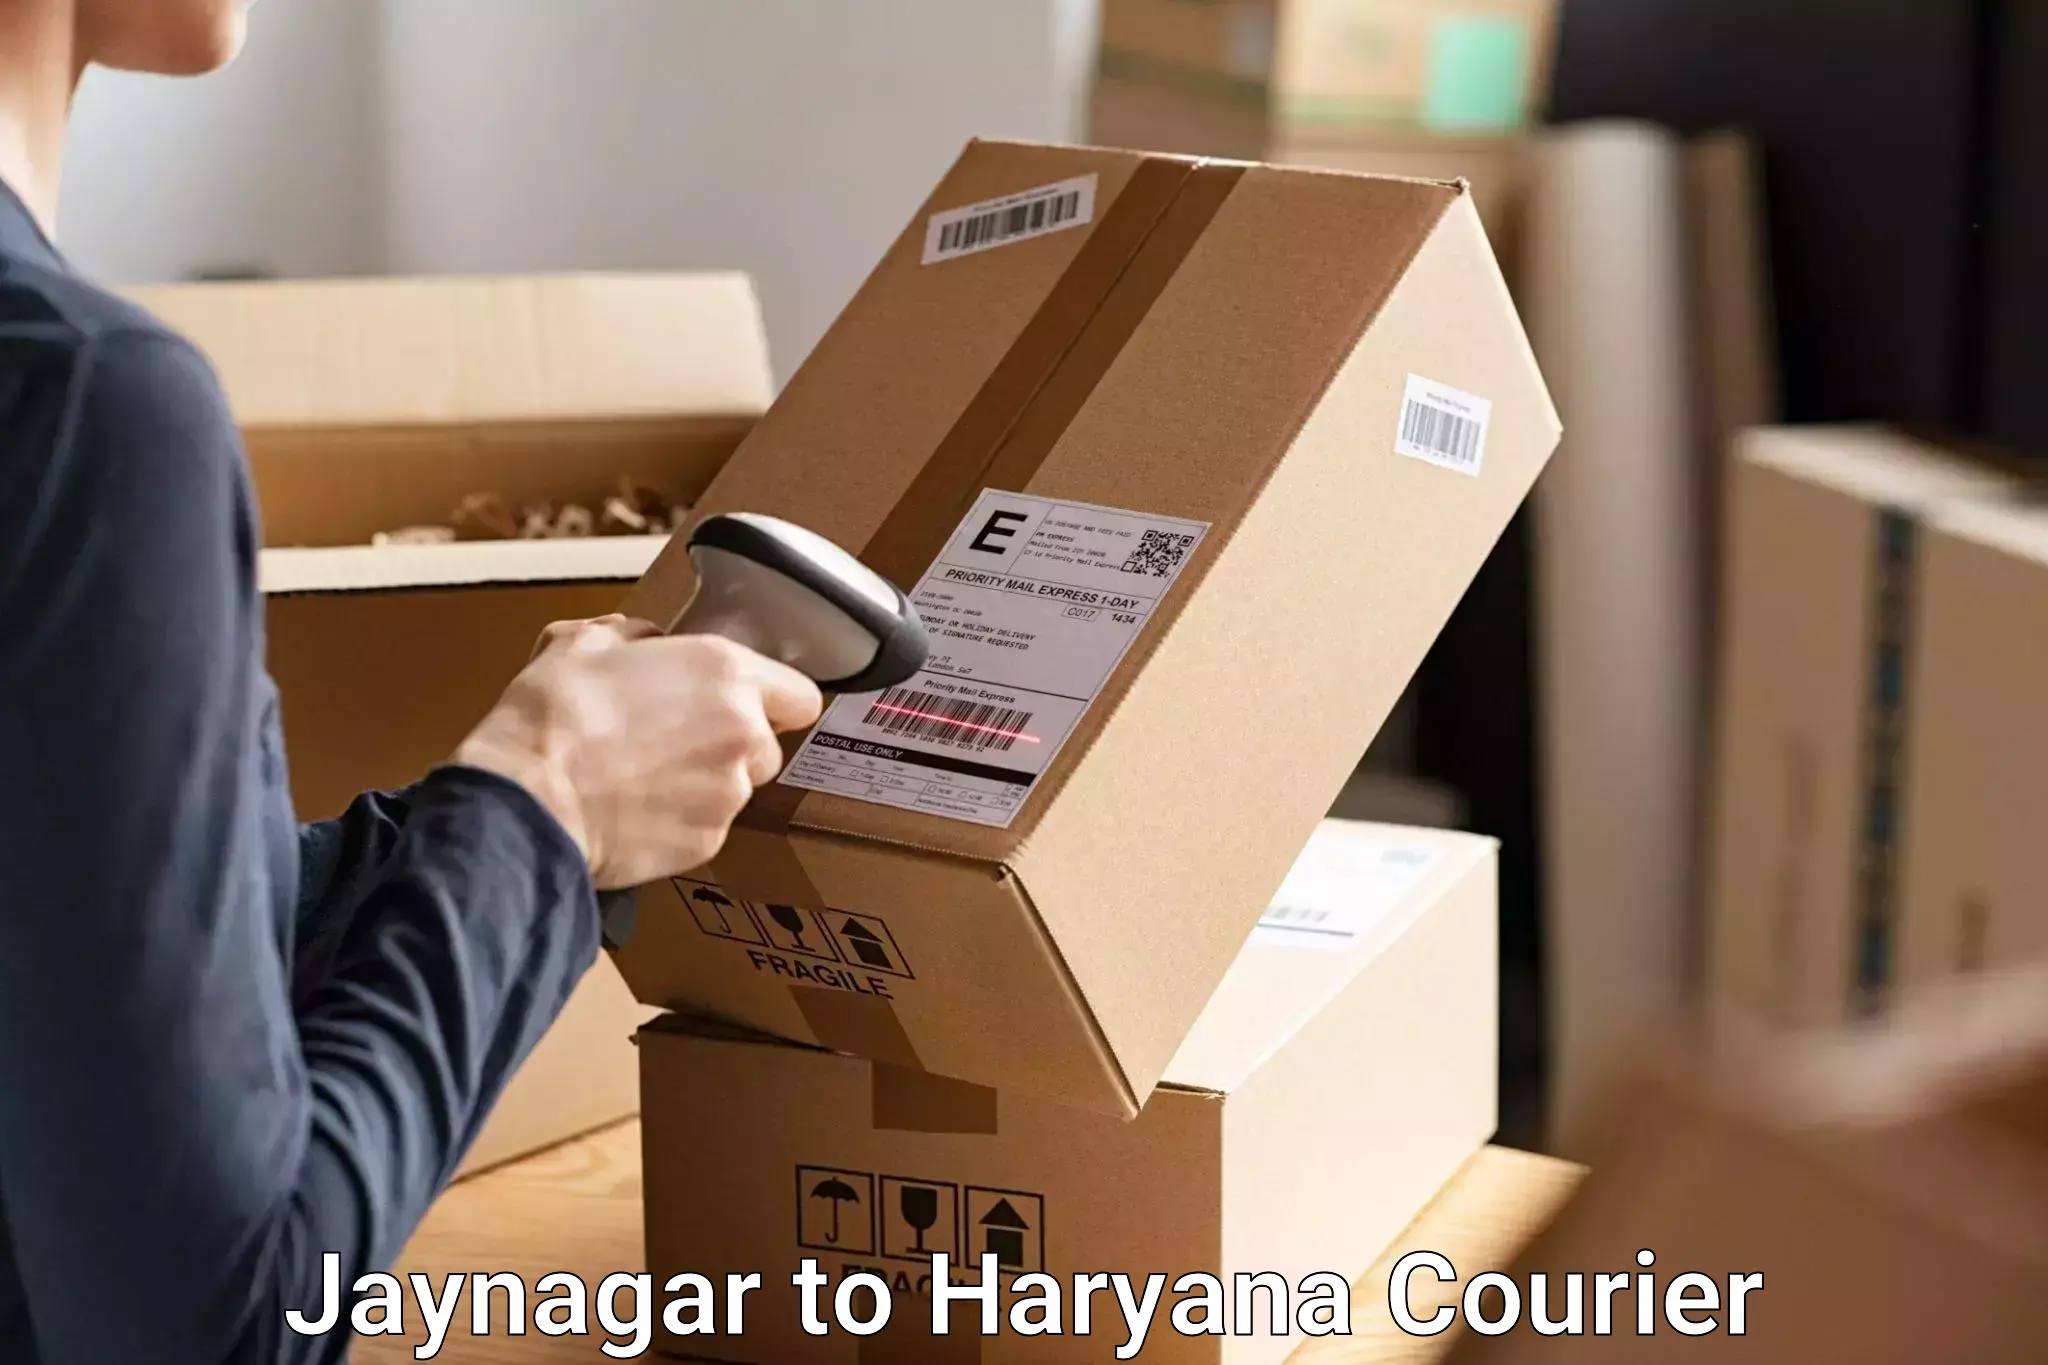 Luggage shipping guide Jaynagar to Panchkula